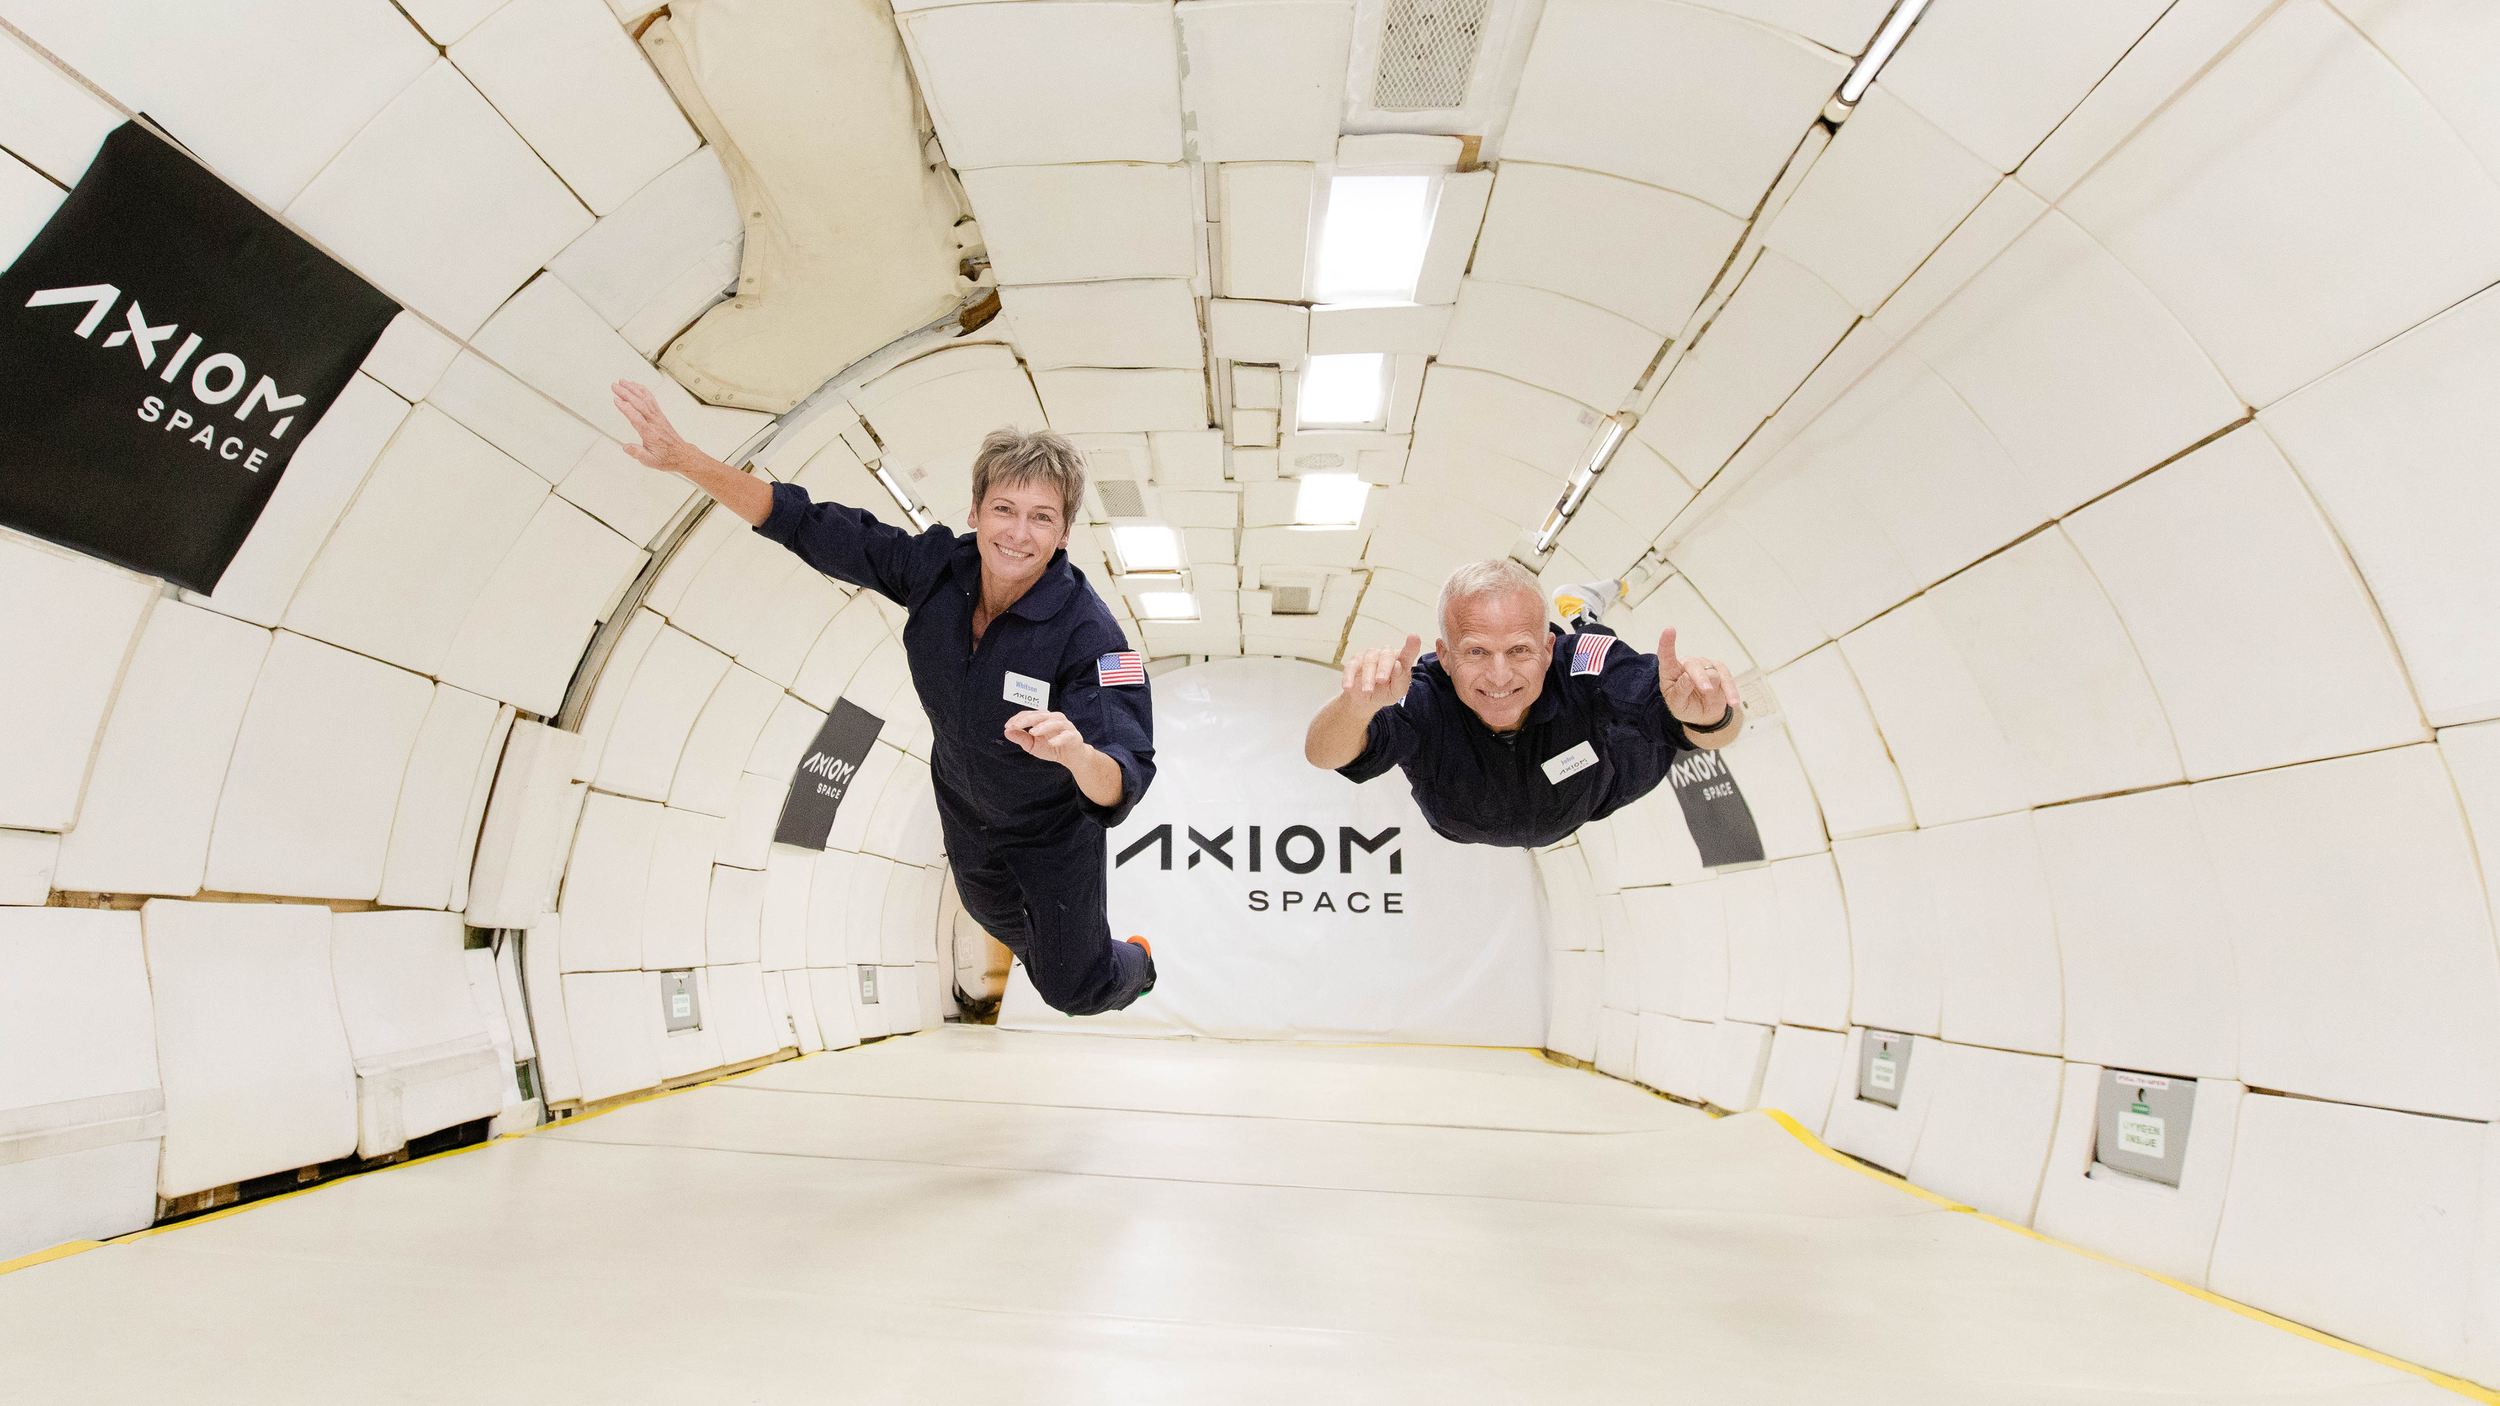 Widok wnętrza samolotu z dwoma pływającymi astronautami.  słowa 